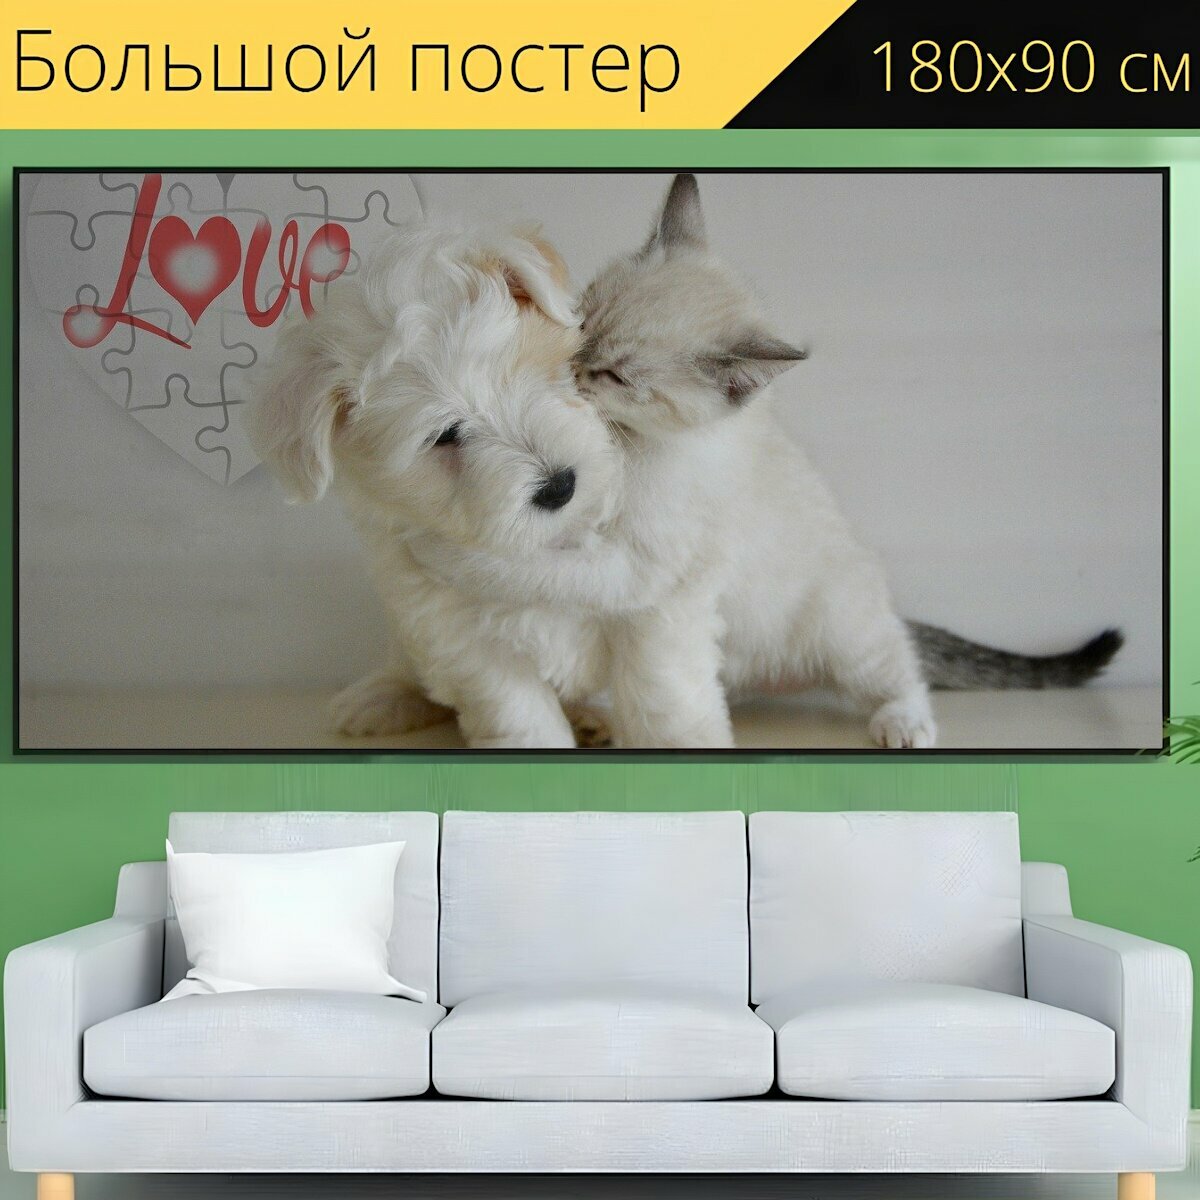 Большой постер "Собачий, котенок, щенок" 180 x 90 см. для интерьера